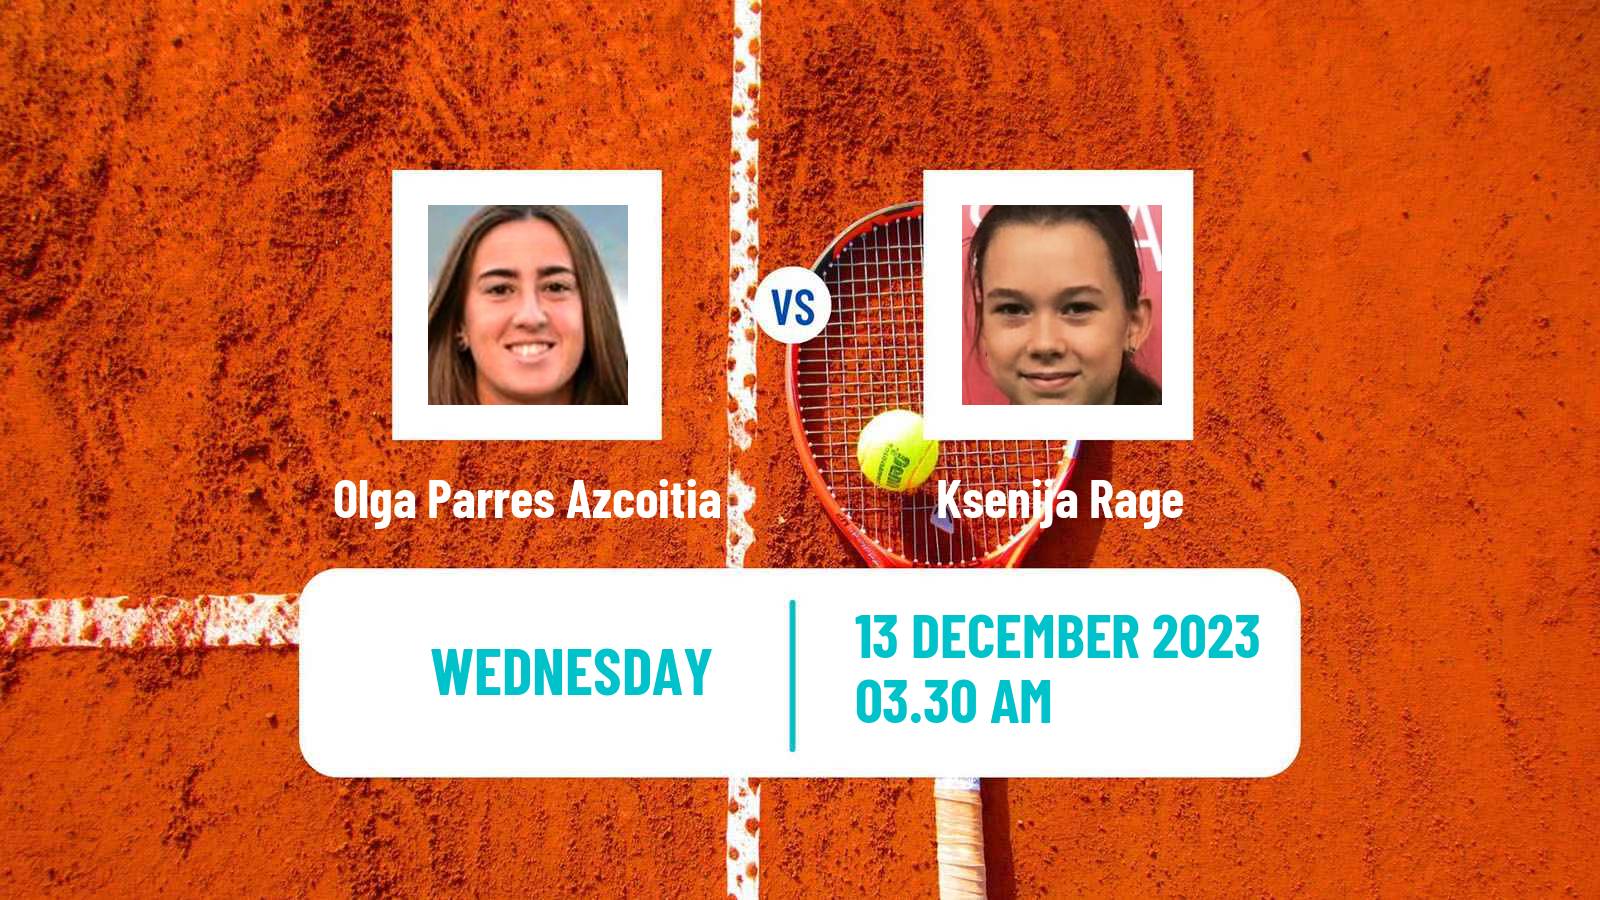 Tennis ITF W15 Melilla Women Olga Parres Azcoitia - Ksenija Rage